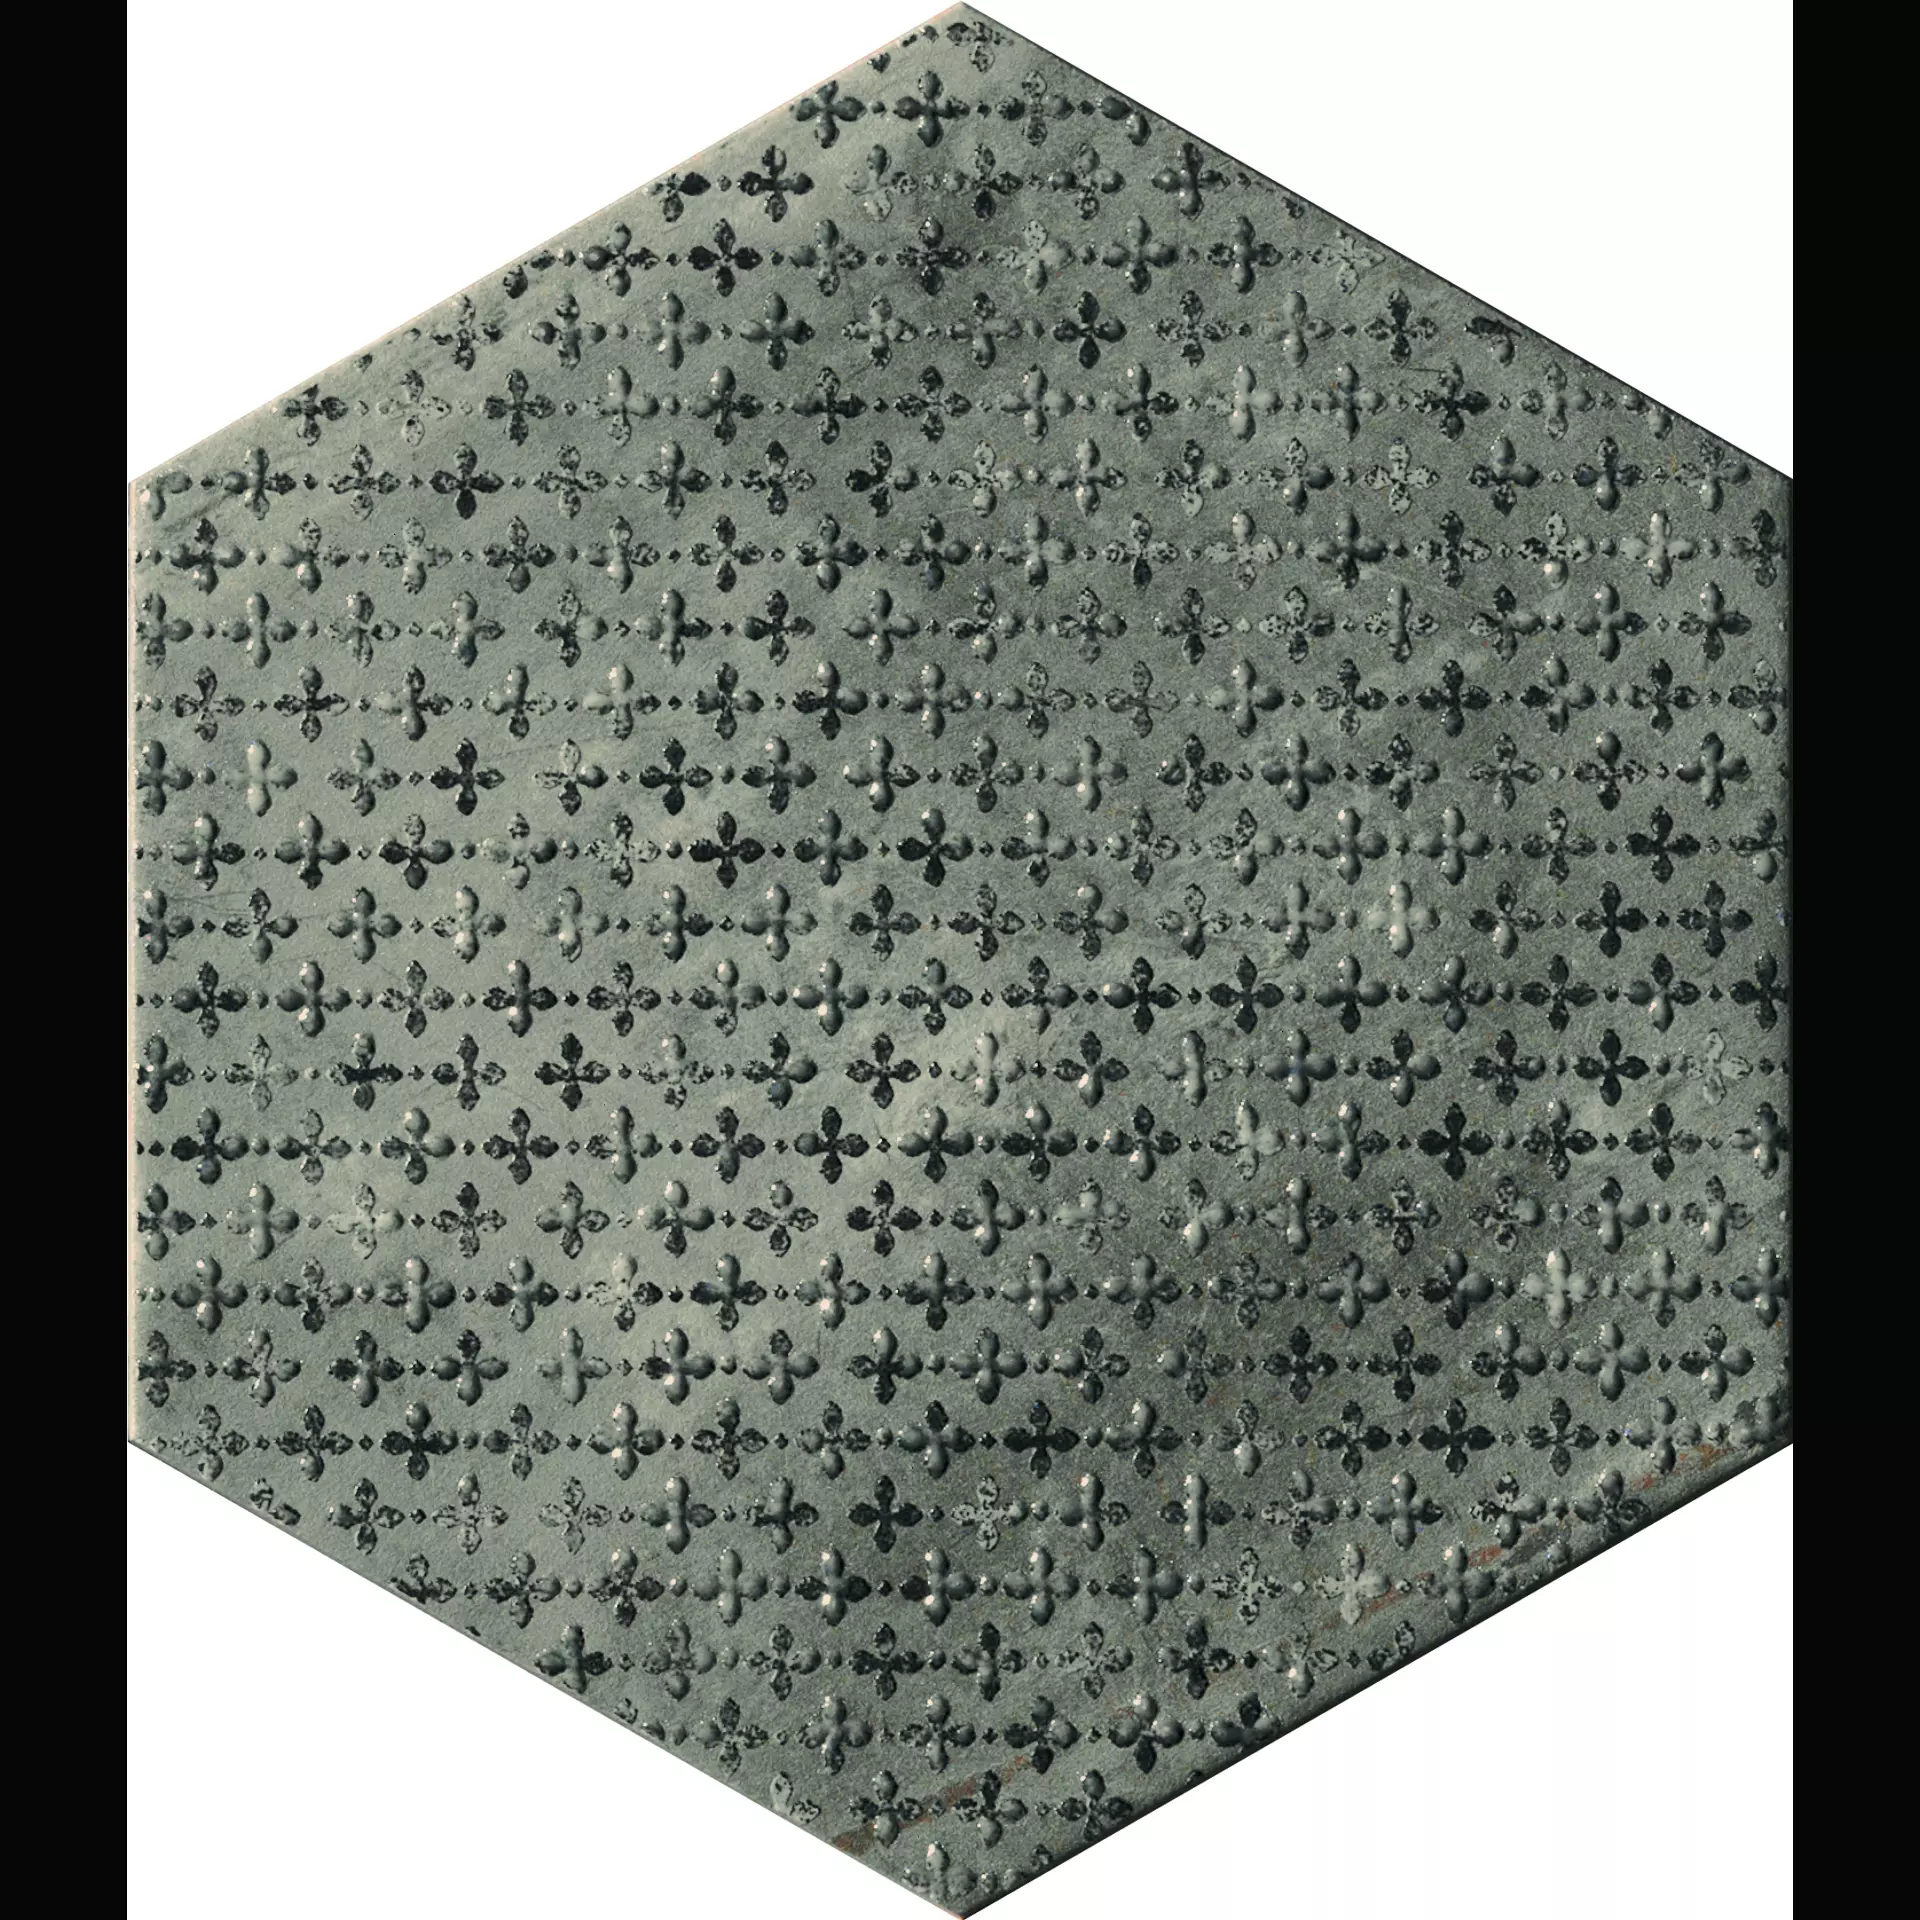 CIR Miami Grey Naturale Hexagon S/6 Florida 1064137 24x27,7cm 10mm